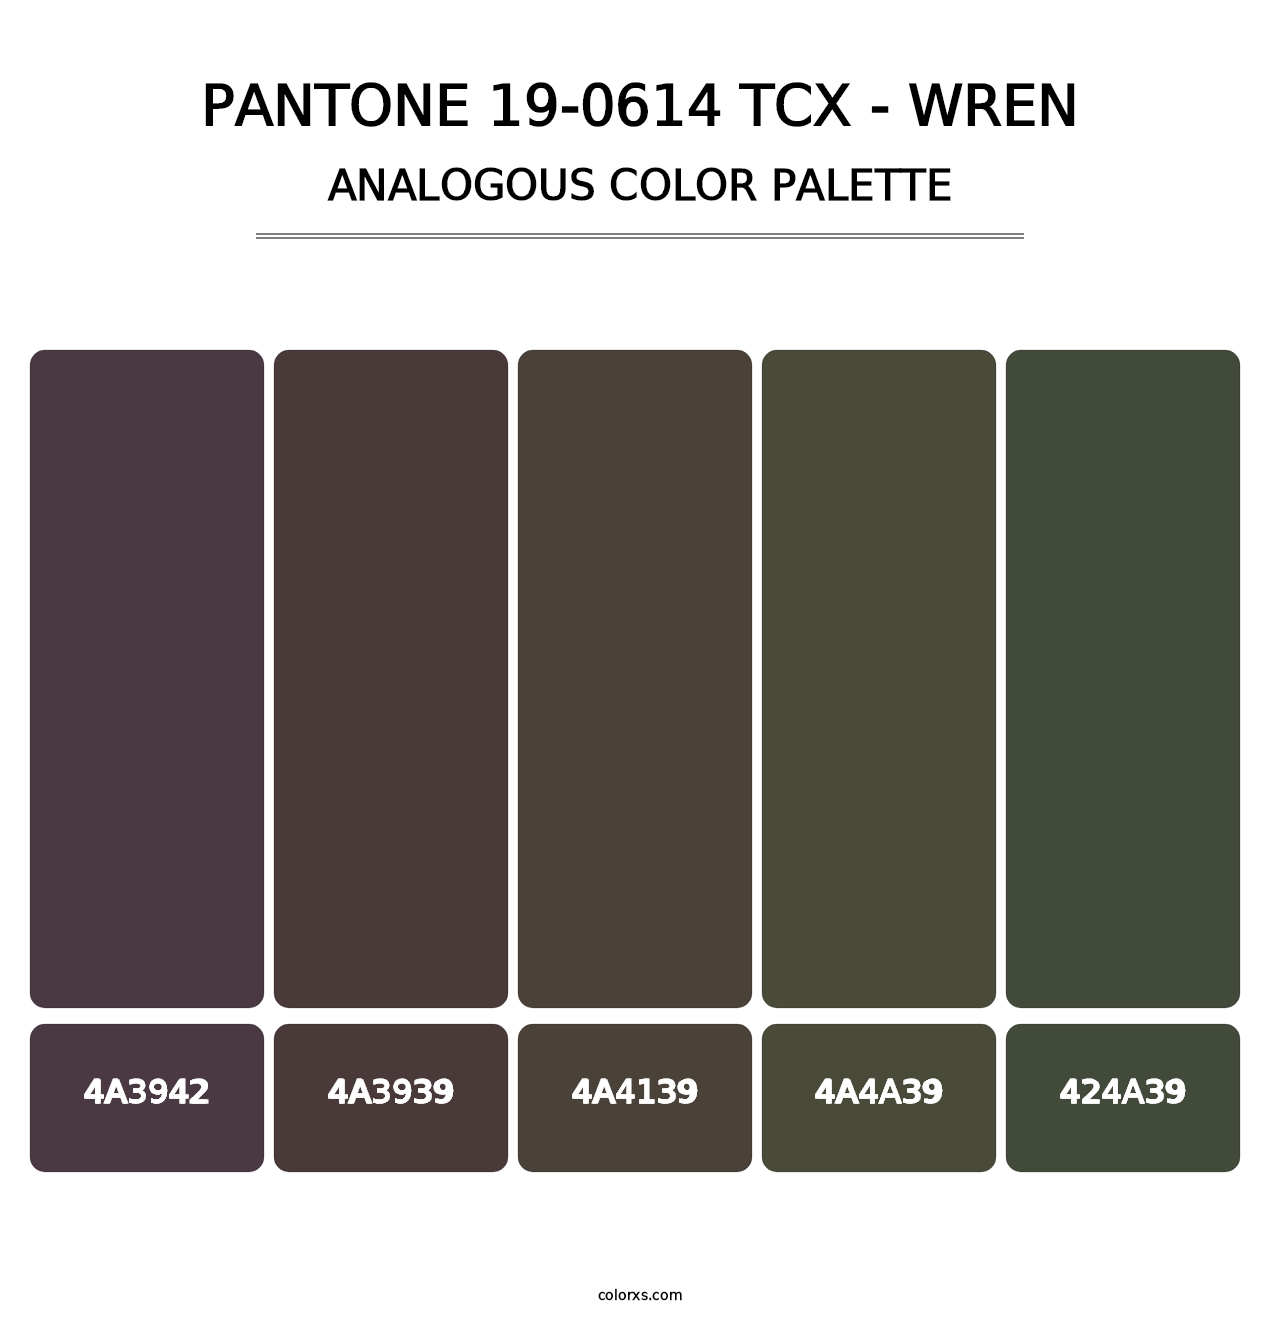 PANTONE 19-0614 TCX - Wren - Analogous Color Palette